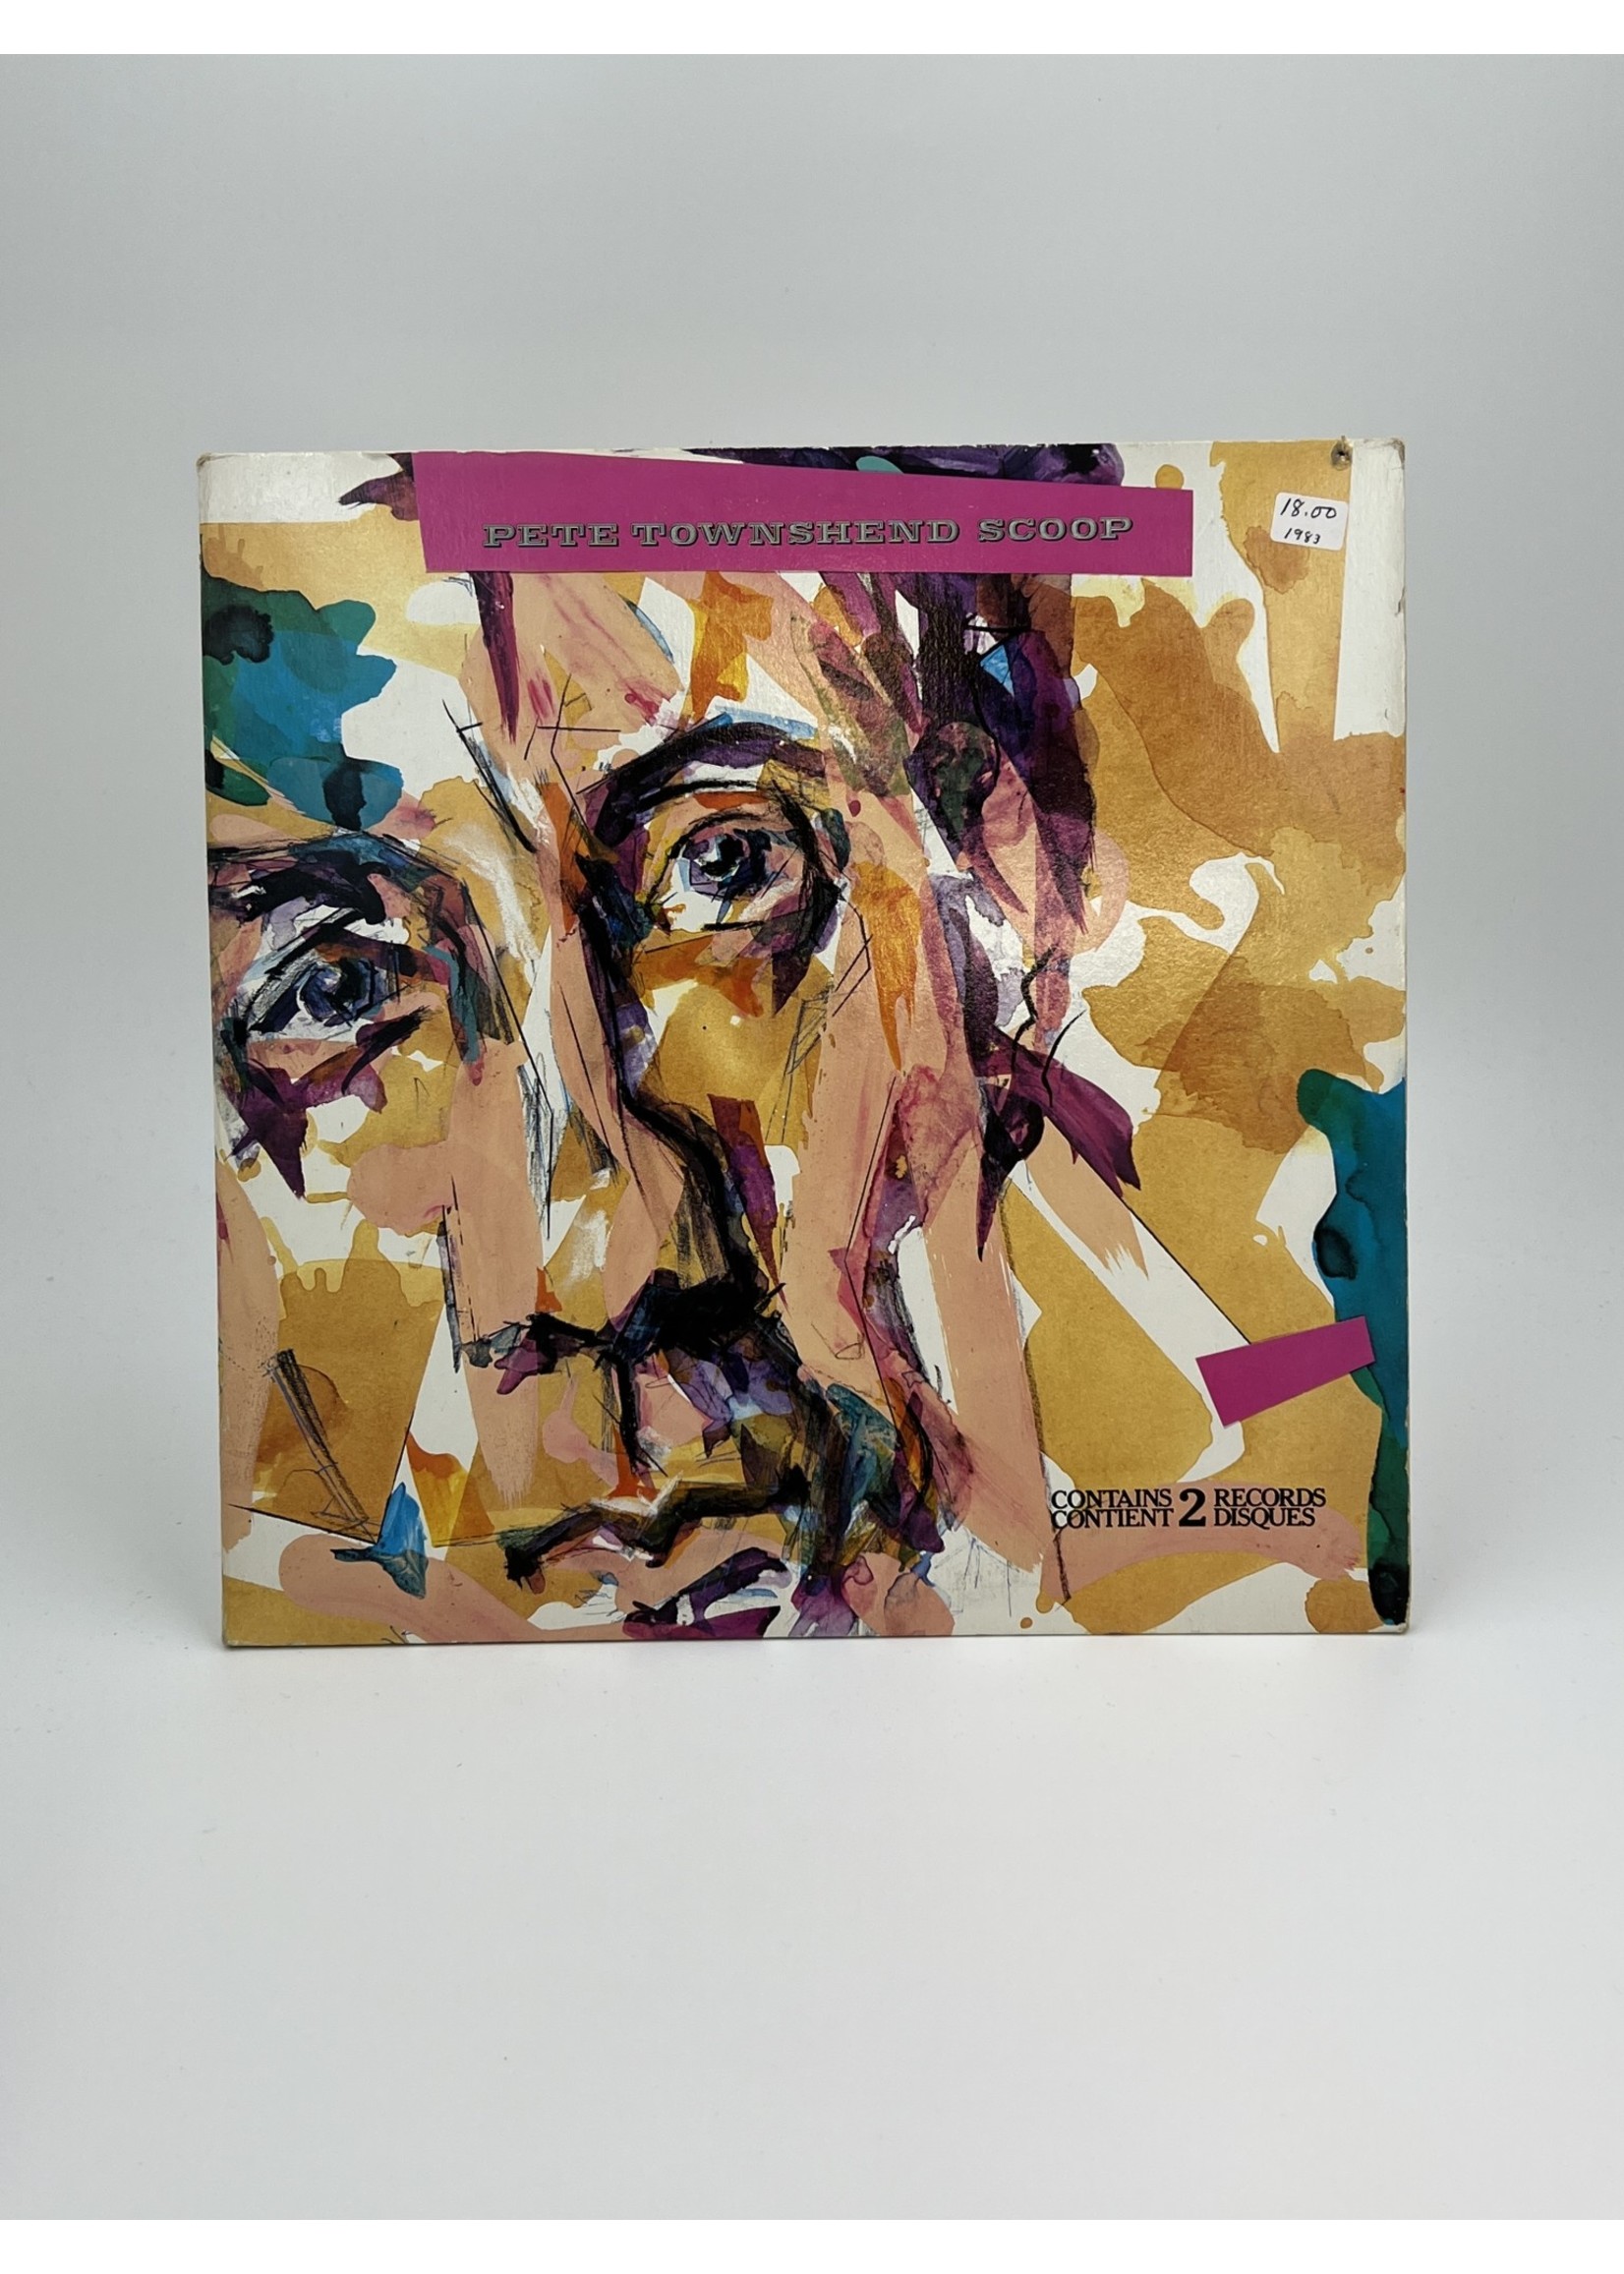 LP Pete Townshend Scoop LP 2 Record